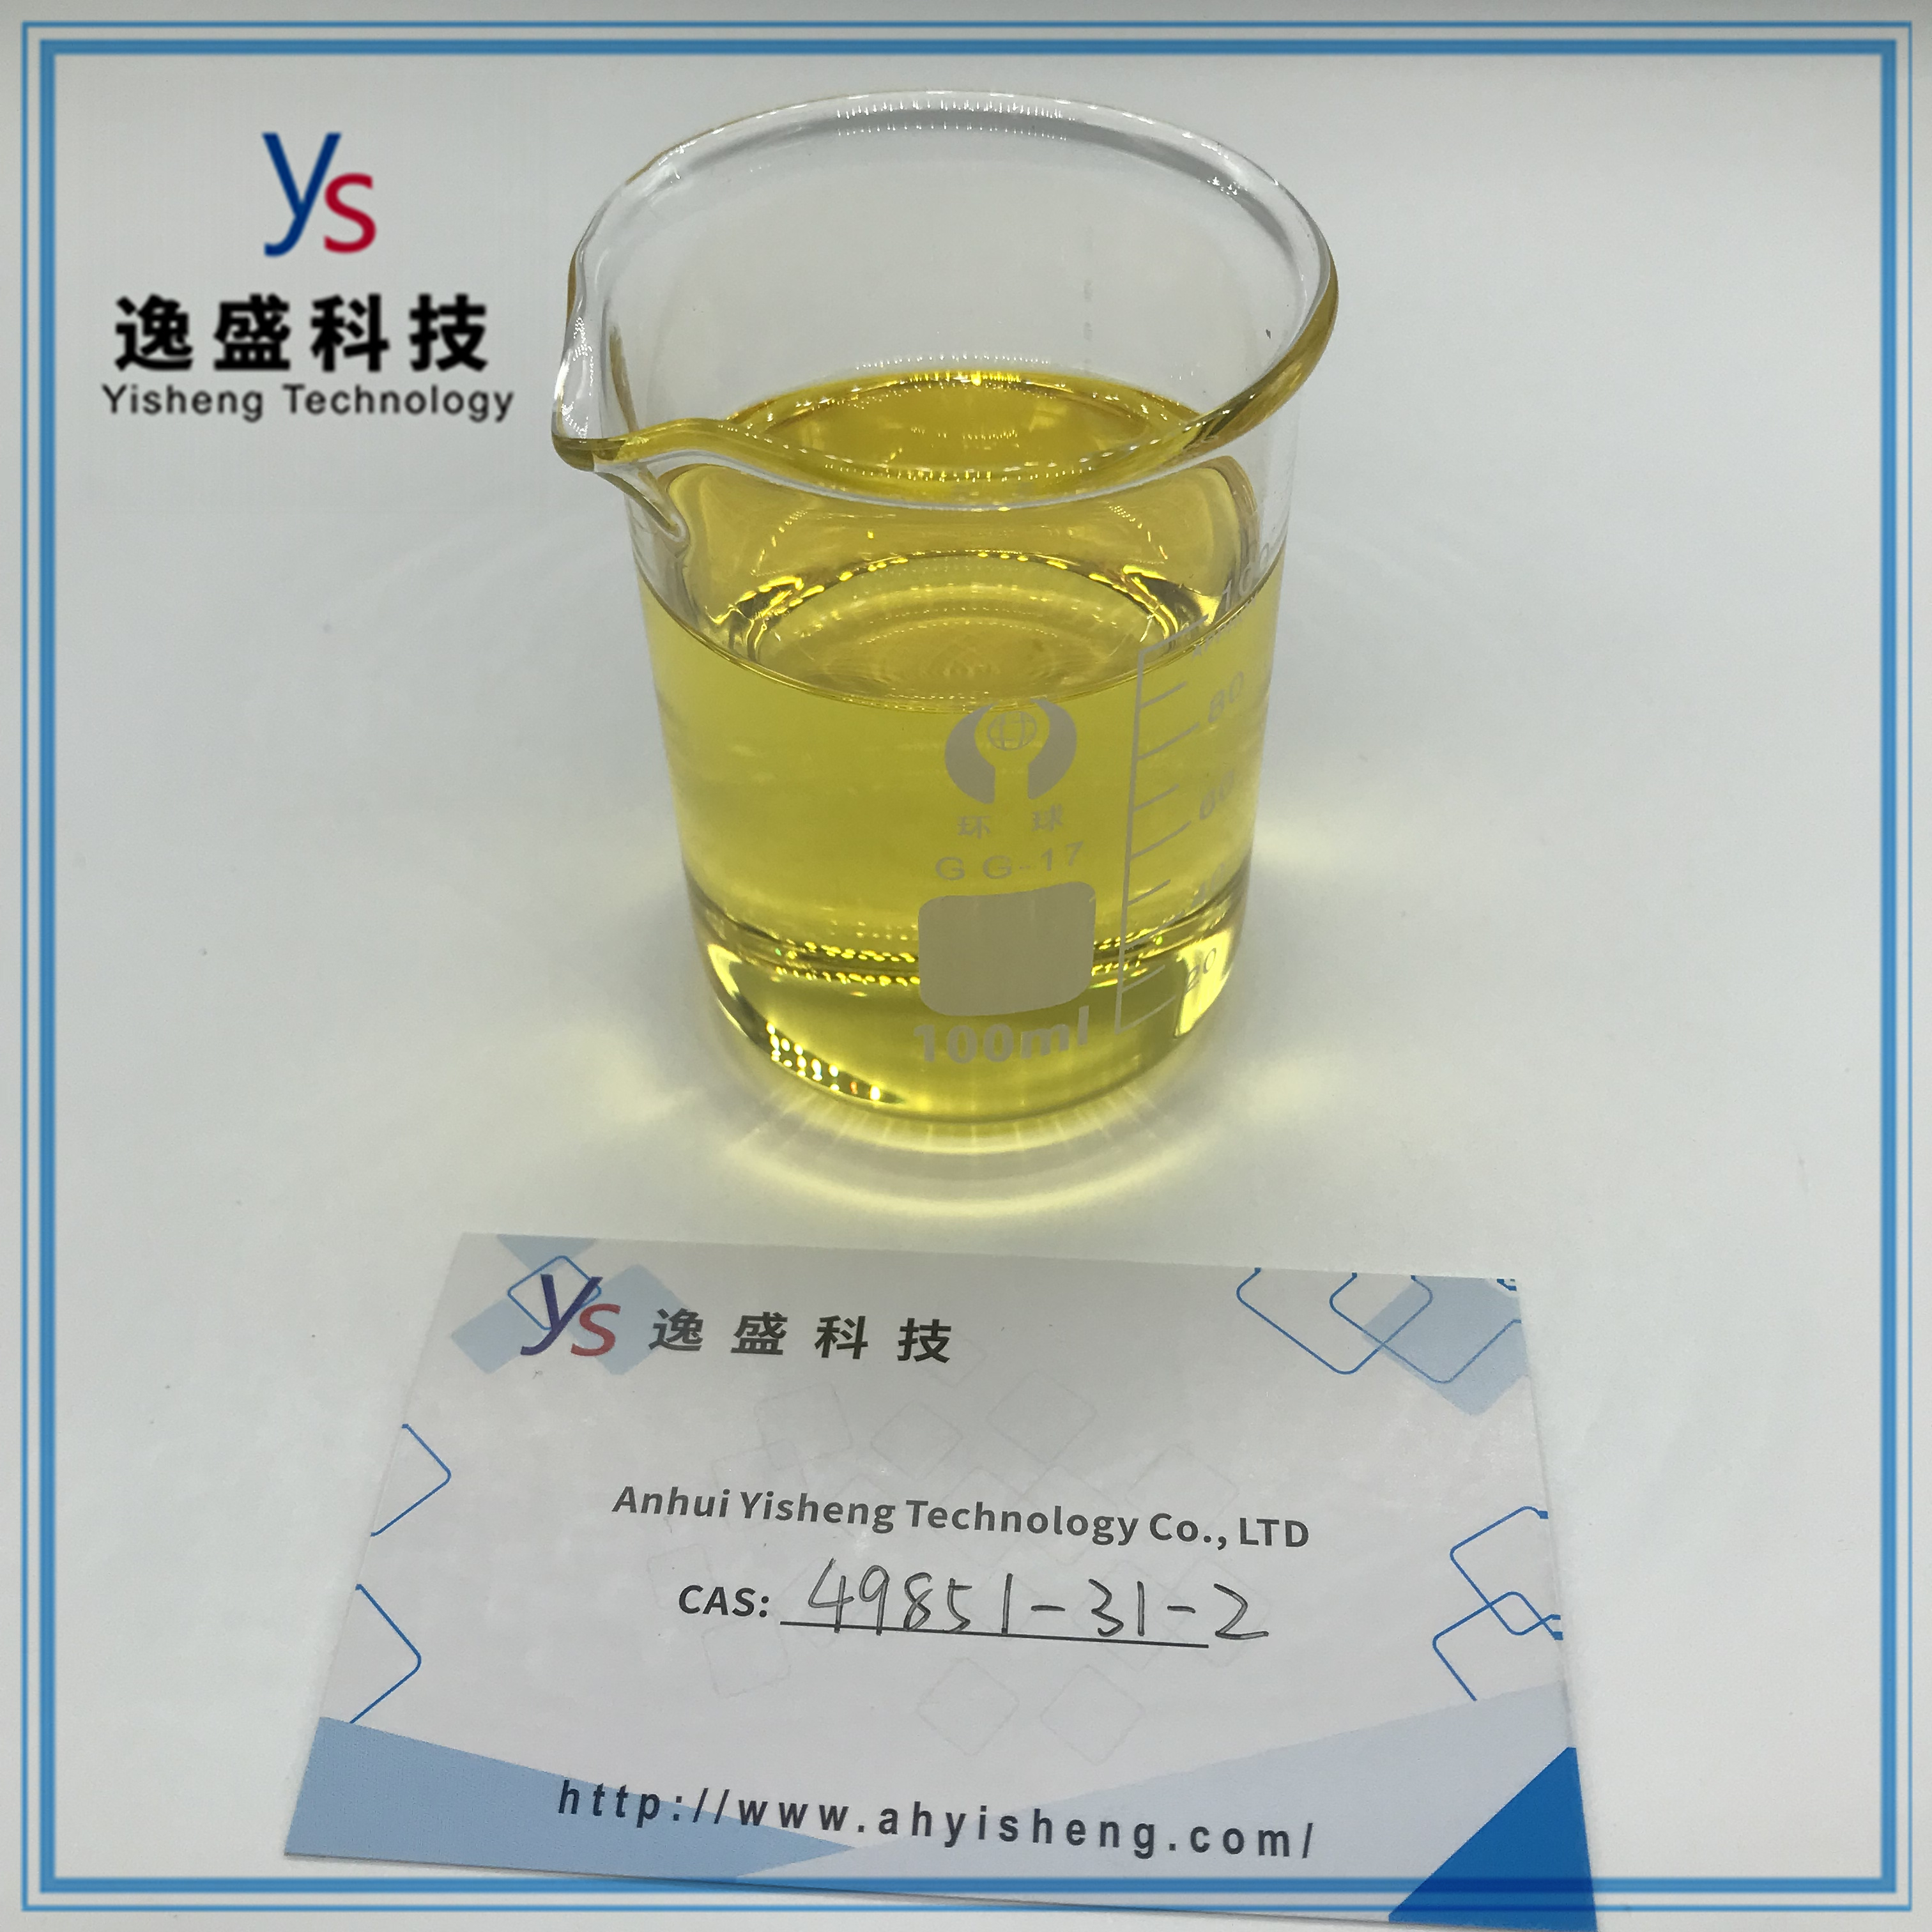 Lever 49851-31-2 vloeistof van hoge kwaliteit